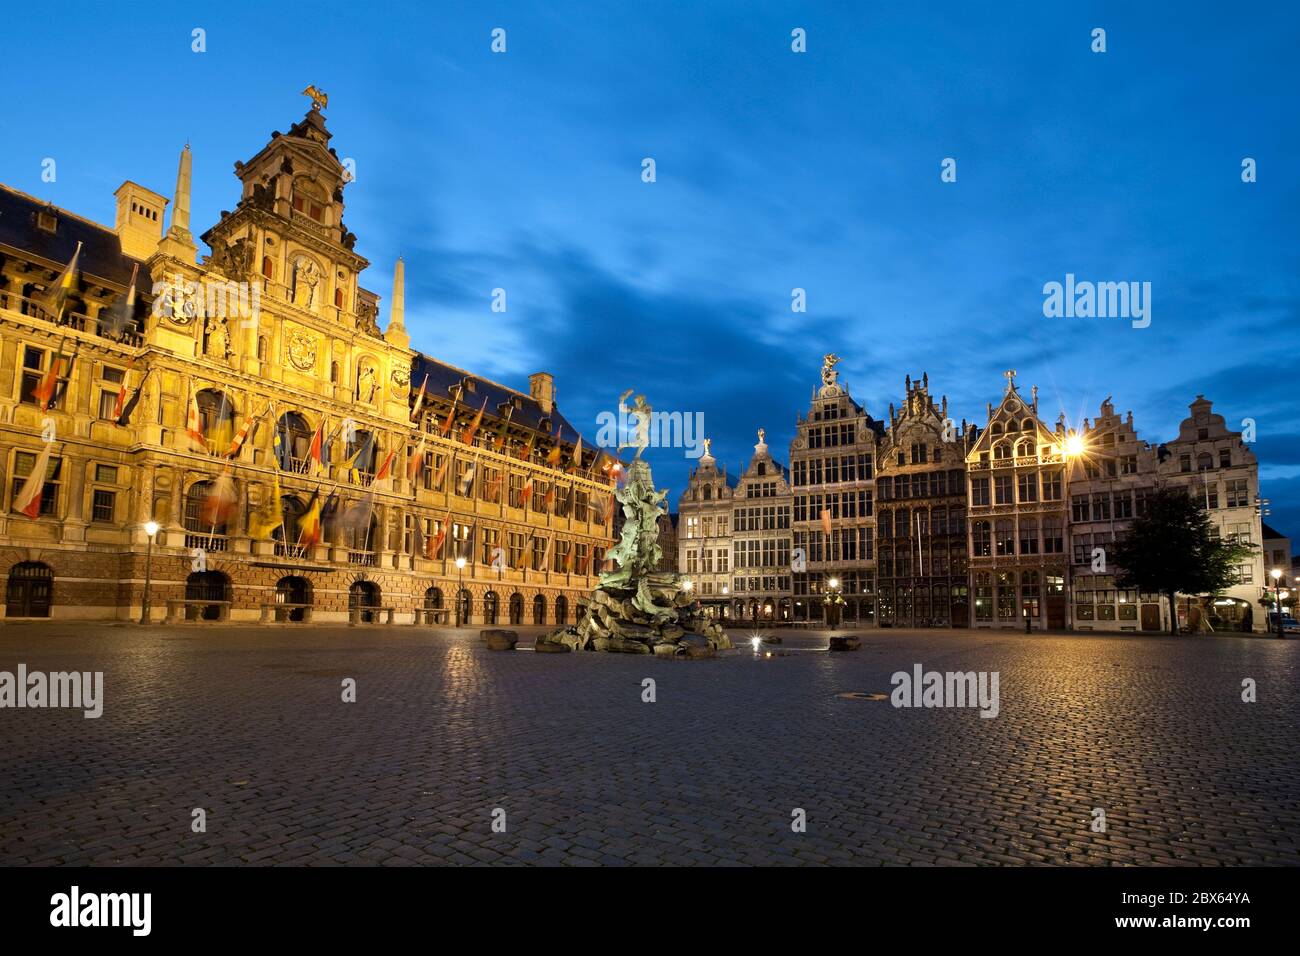 Der Grote Markt mit dem Rathaus und Gildenhallen Nacht Schuss. Stockfoto